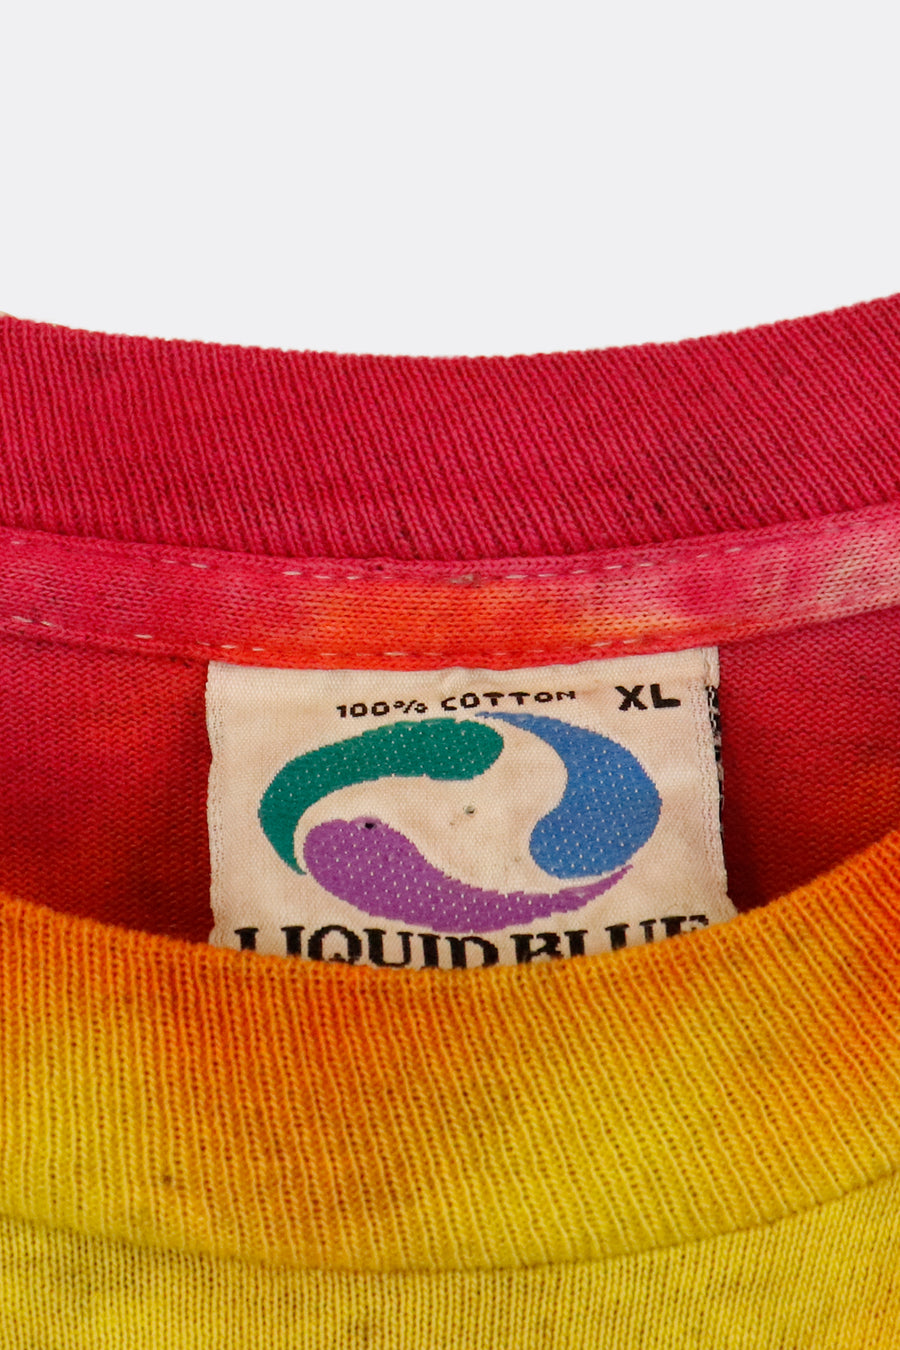 Vintage 1992 Grateful Dead Space Your Face Tie Dye Graphic T Shirt Sz XL